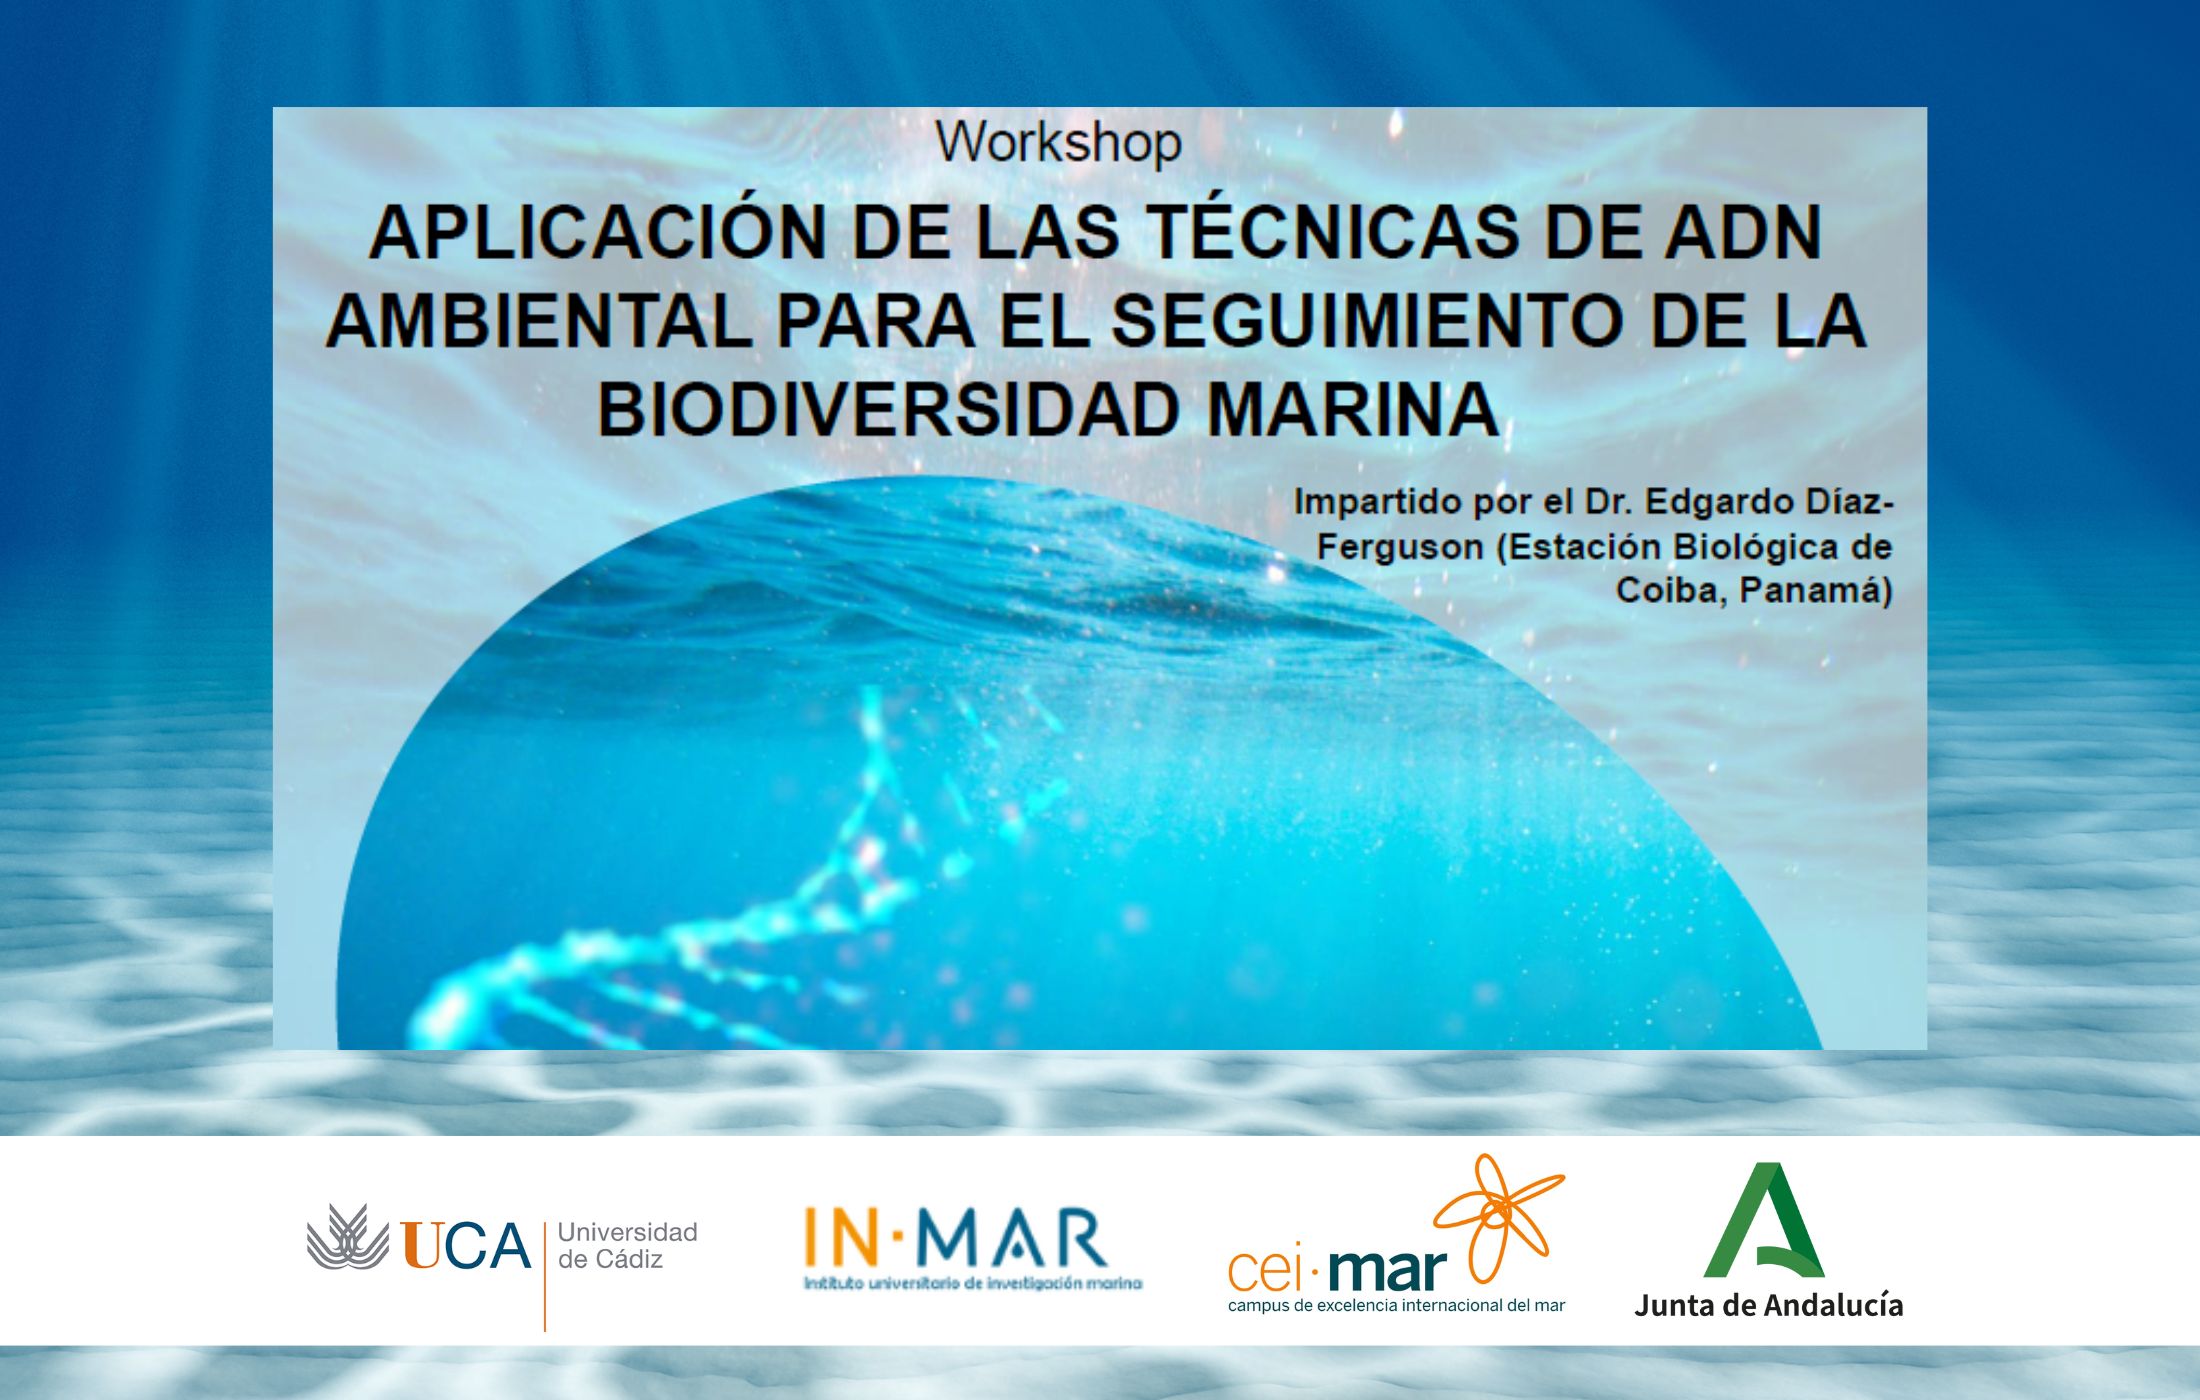 Workshop “Aplicación de las técnicas de ADN ambiental para el seguimiento de la biodiversidad marina”